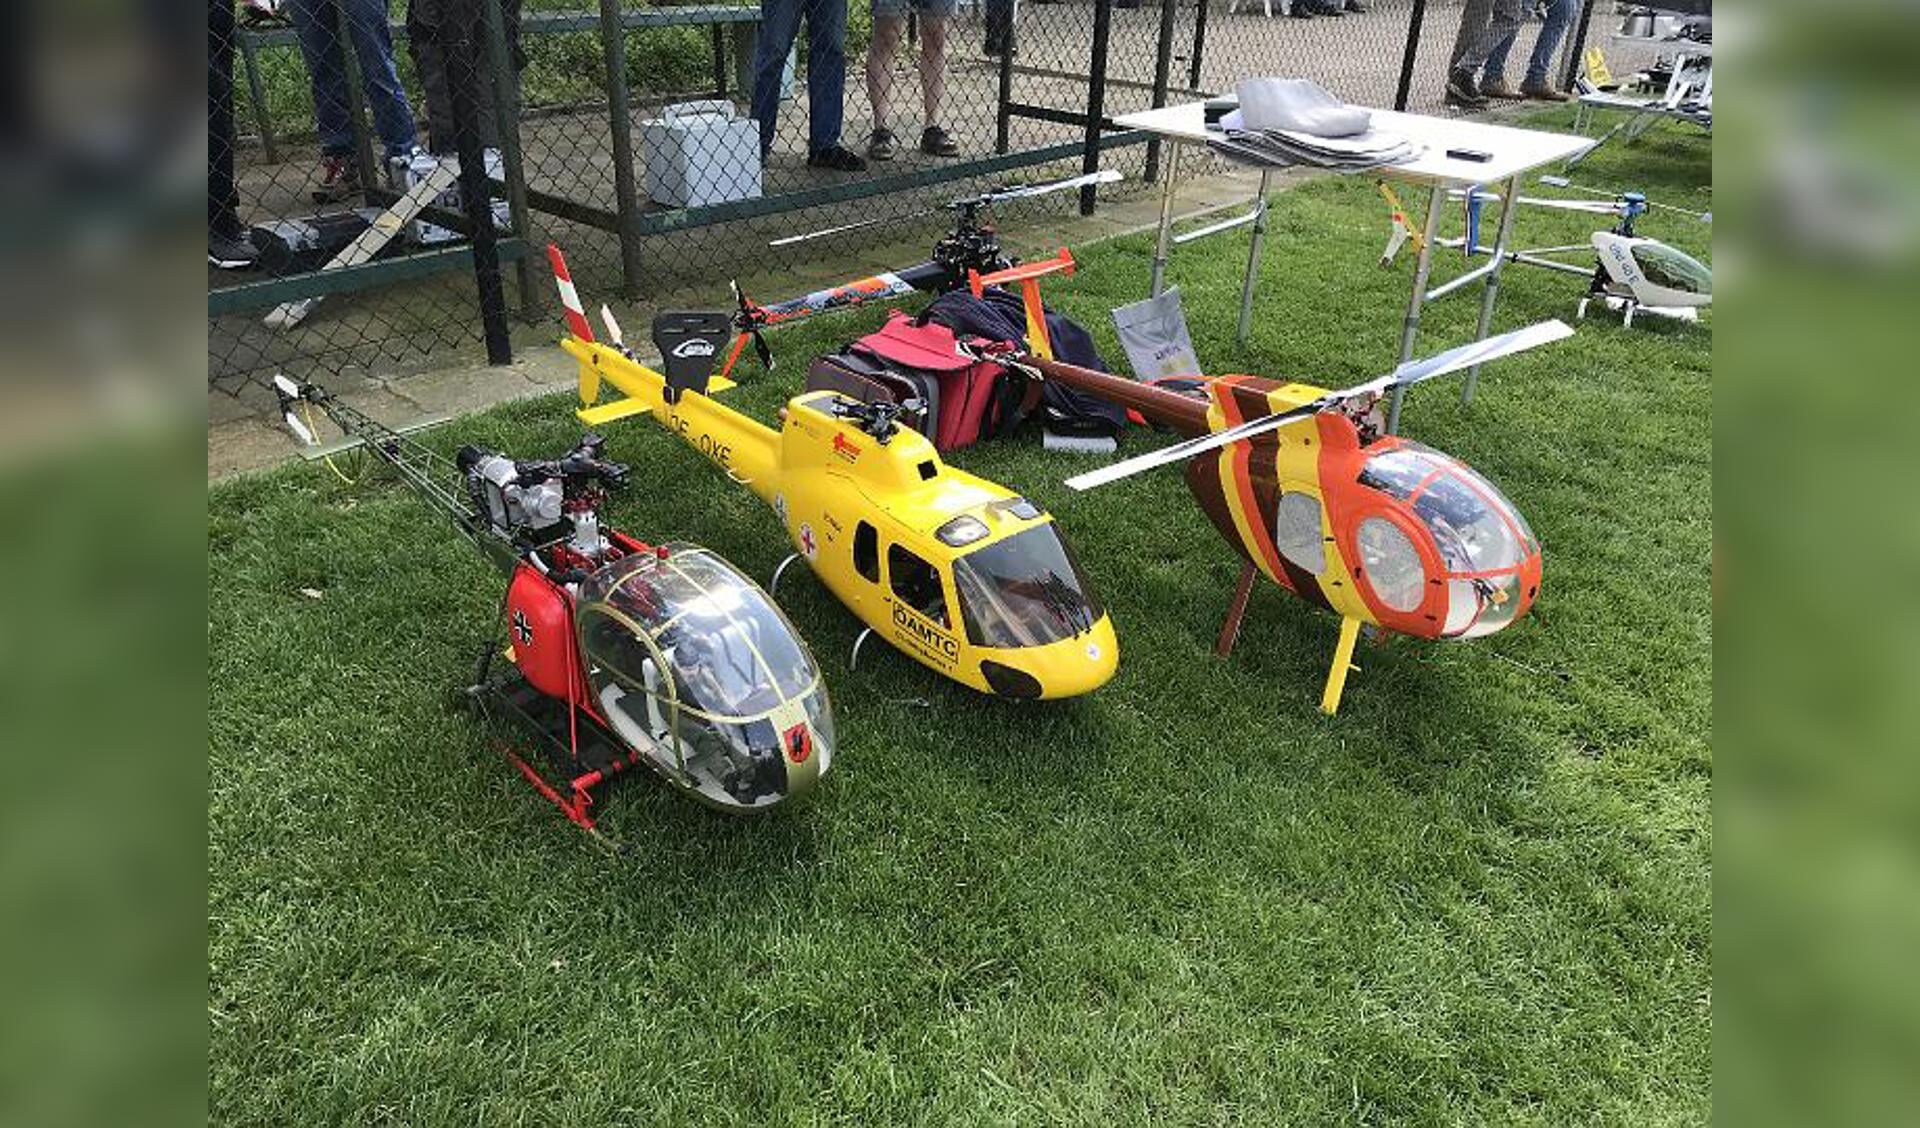 Modelhelikopters